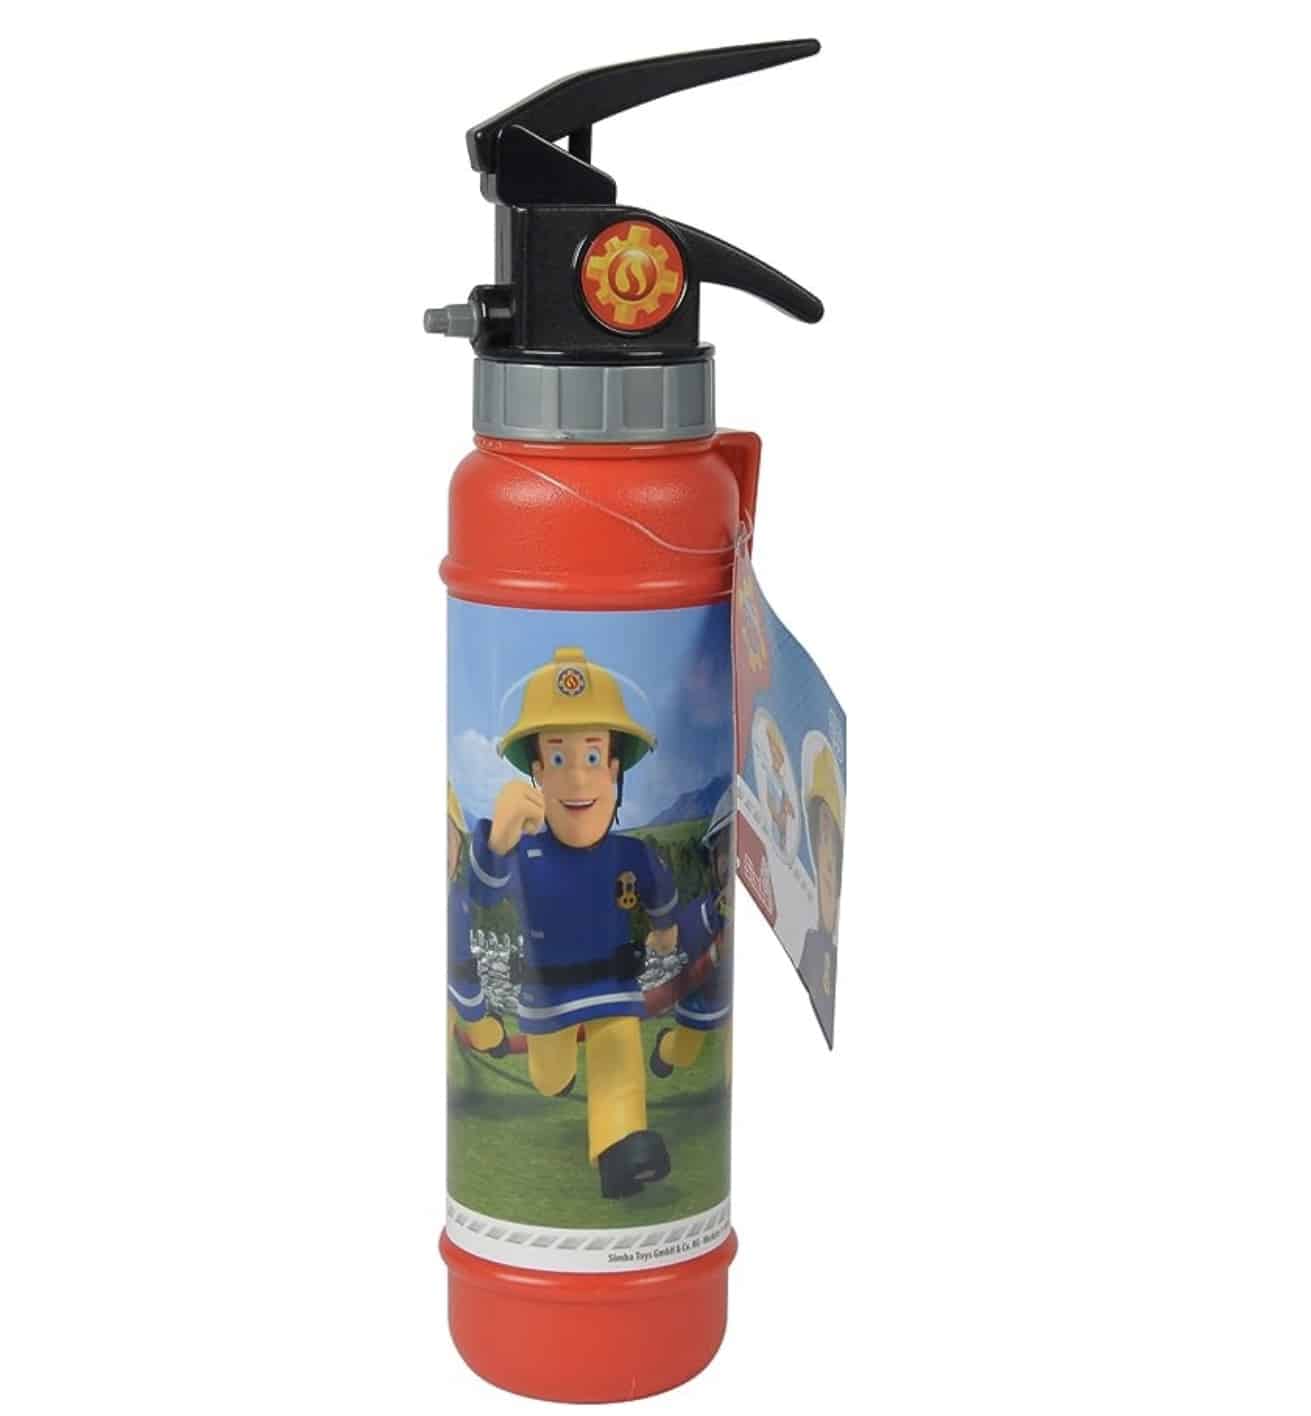 Feuerlöscher für Kinder